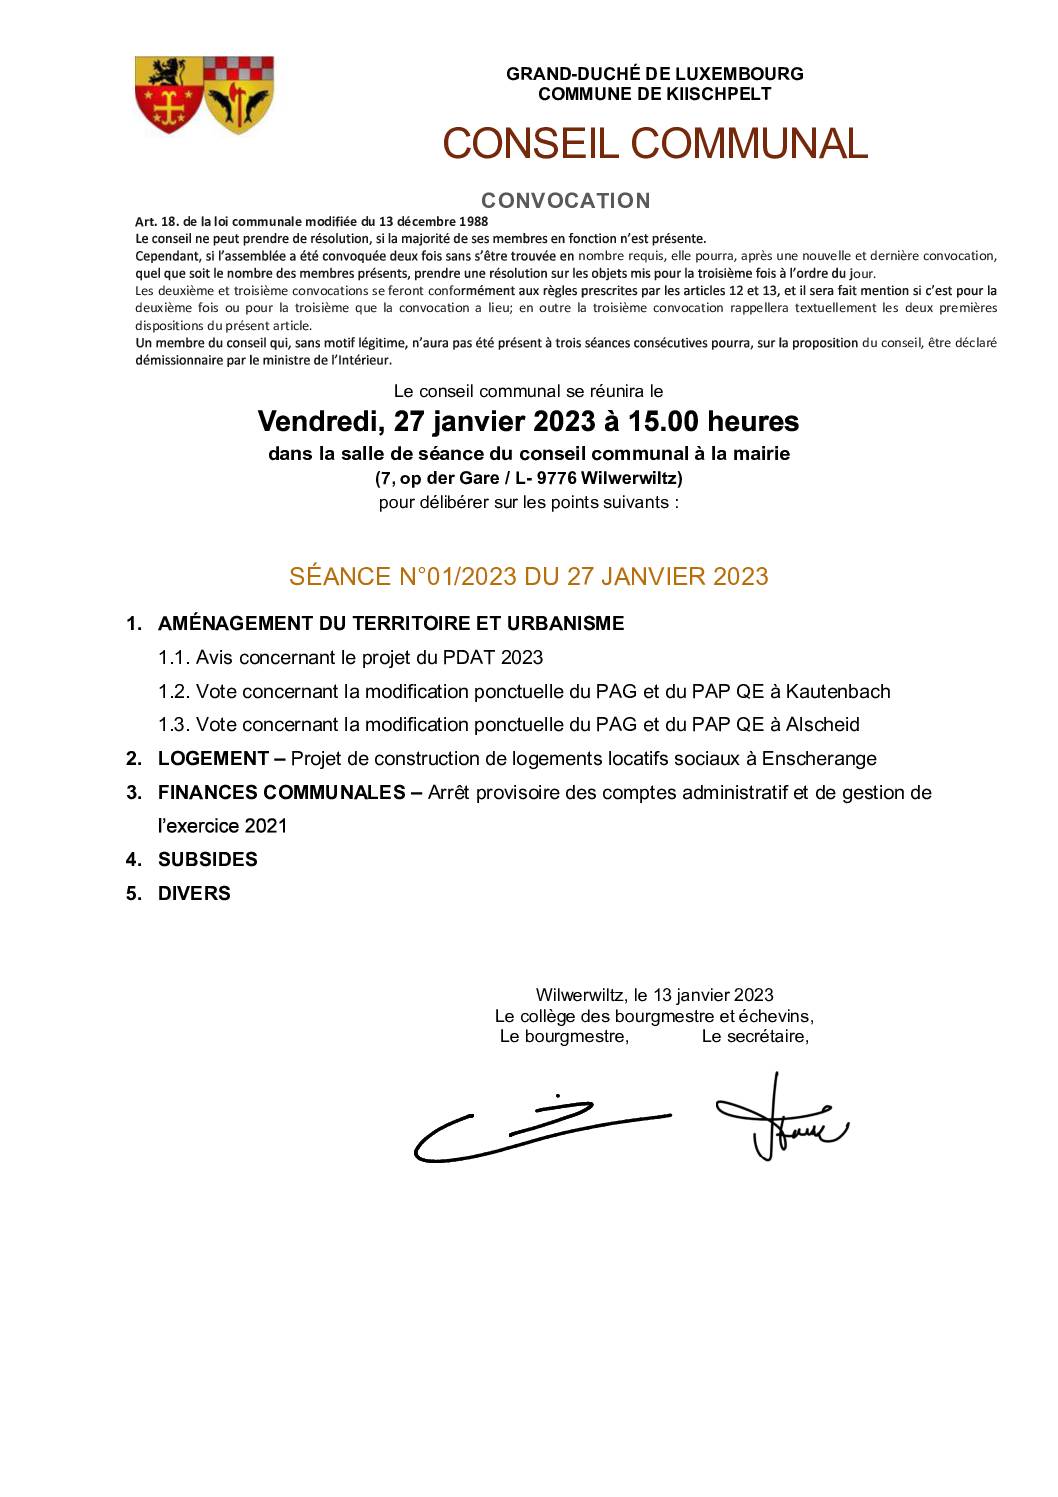 Conseil communal - Convocation - Séance 01/2023 du 27 Janvier 2023